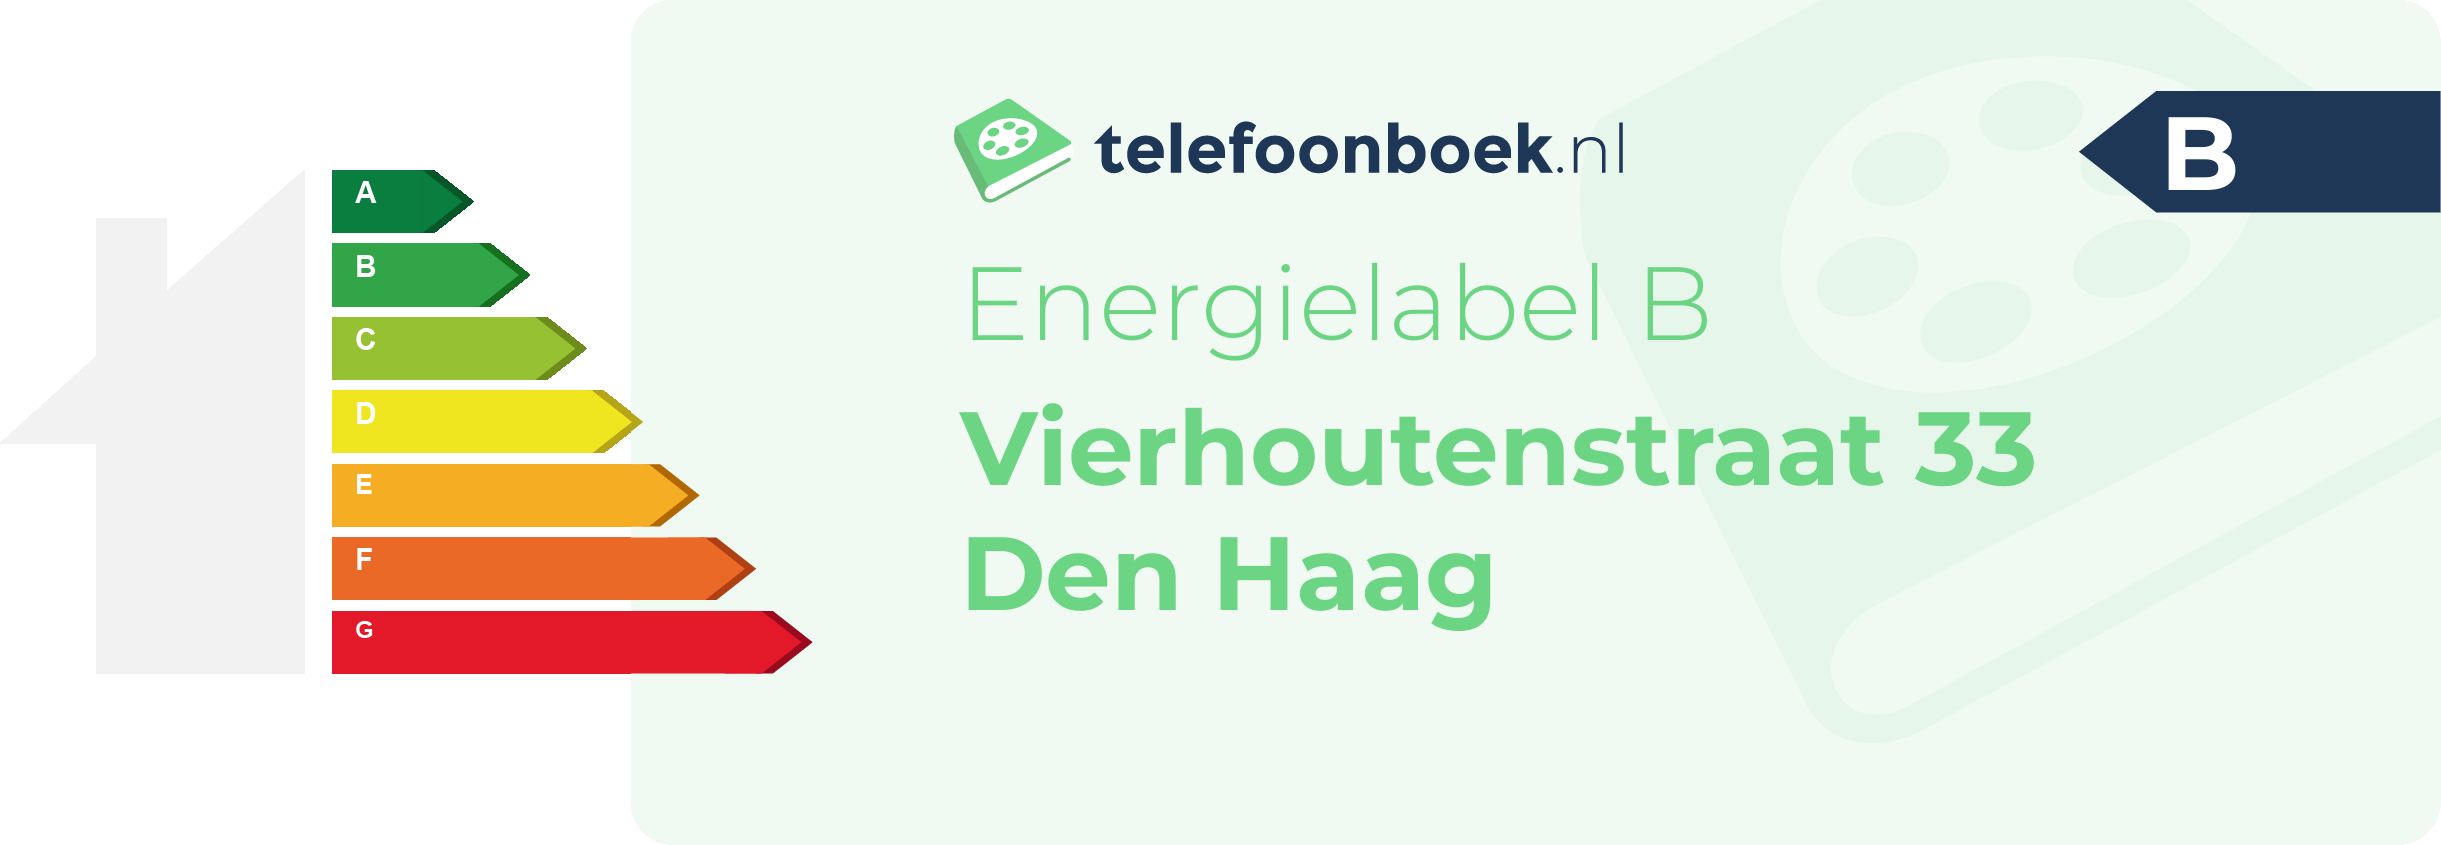 Energielabel Vierhoutenstraat 33 Den Haag